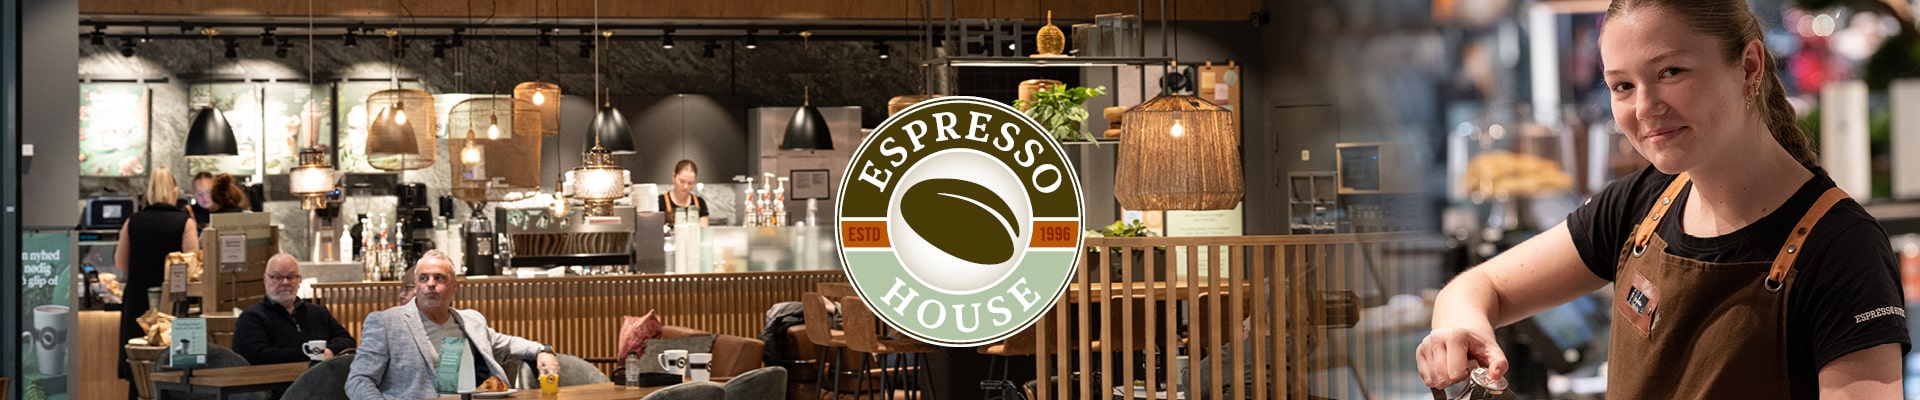 Espresso House - Metropol Shoppingcenter